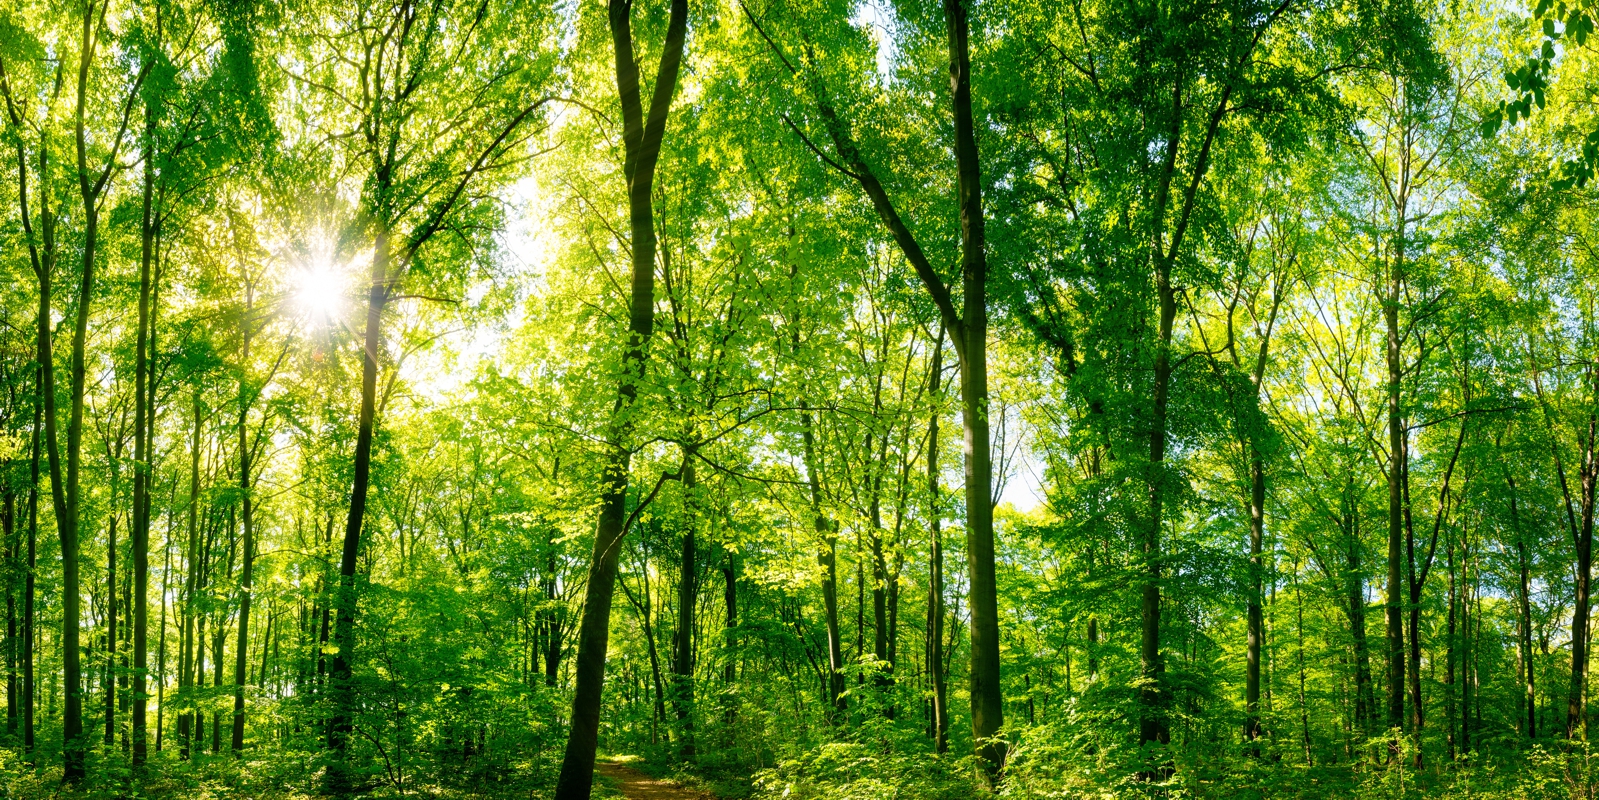 Vlies Tapete Poster XXL Fototapete Natur Wald Lichtung Bäume